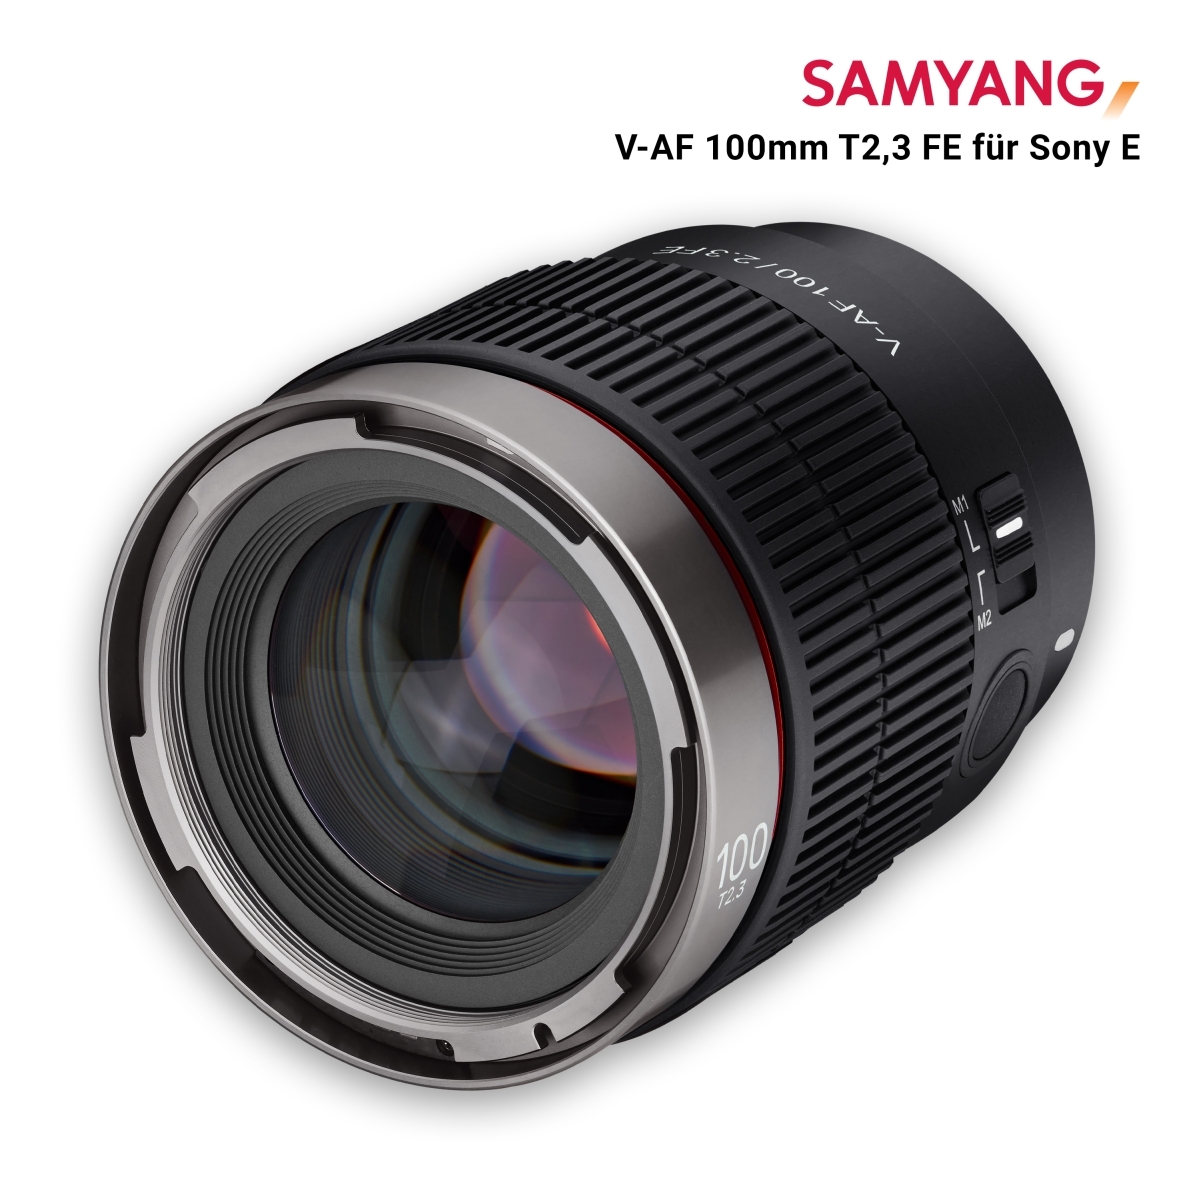 Samyang V-AF 100mm T2,3 FE voor Sony E